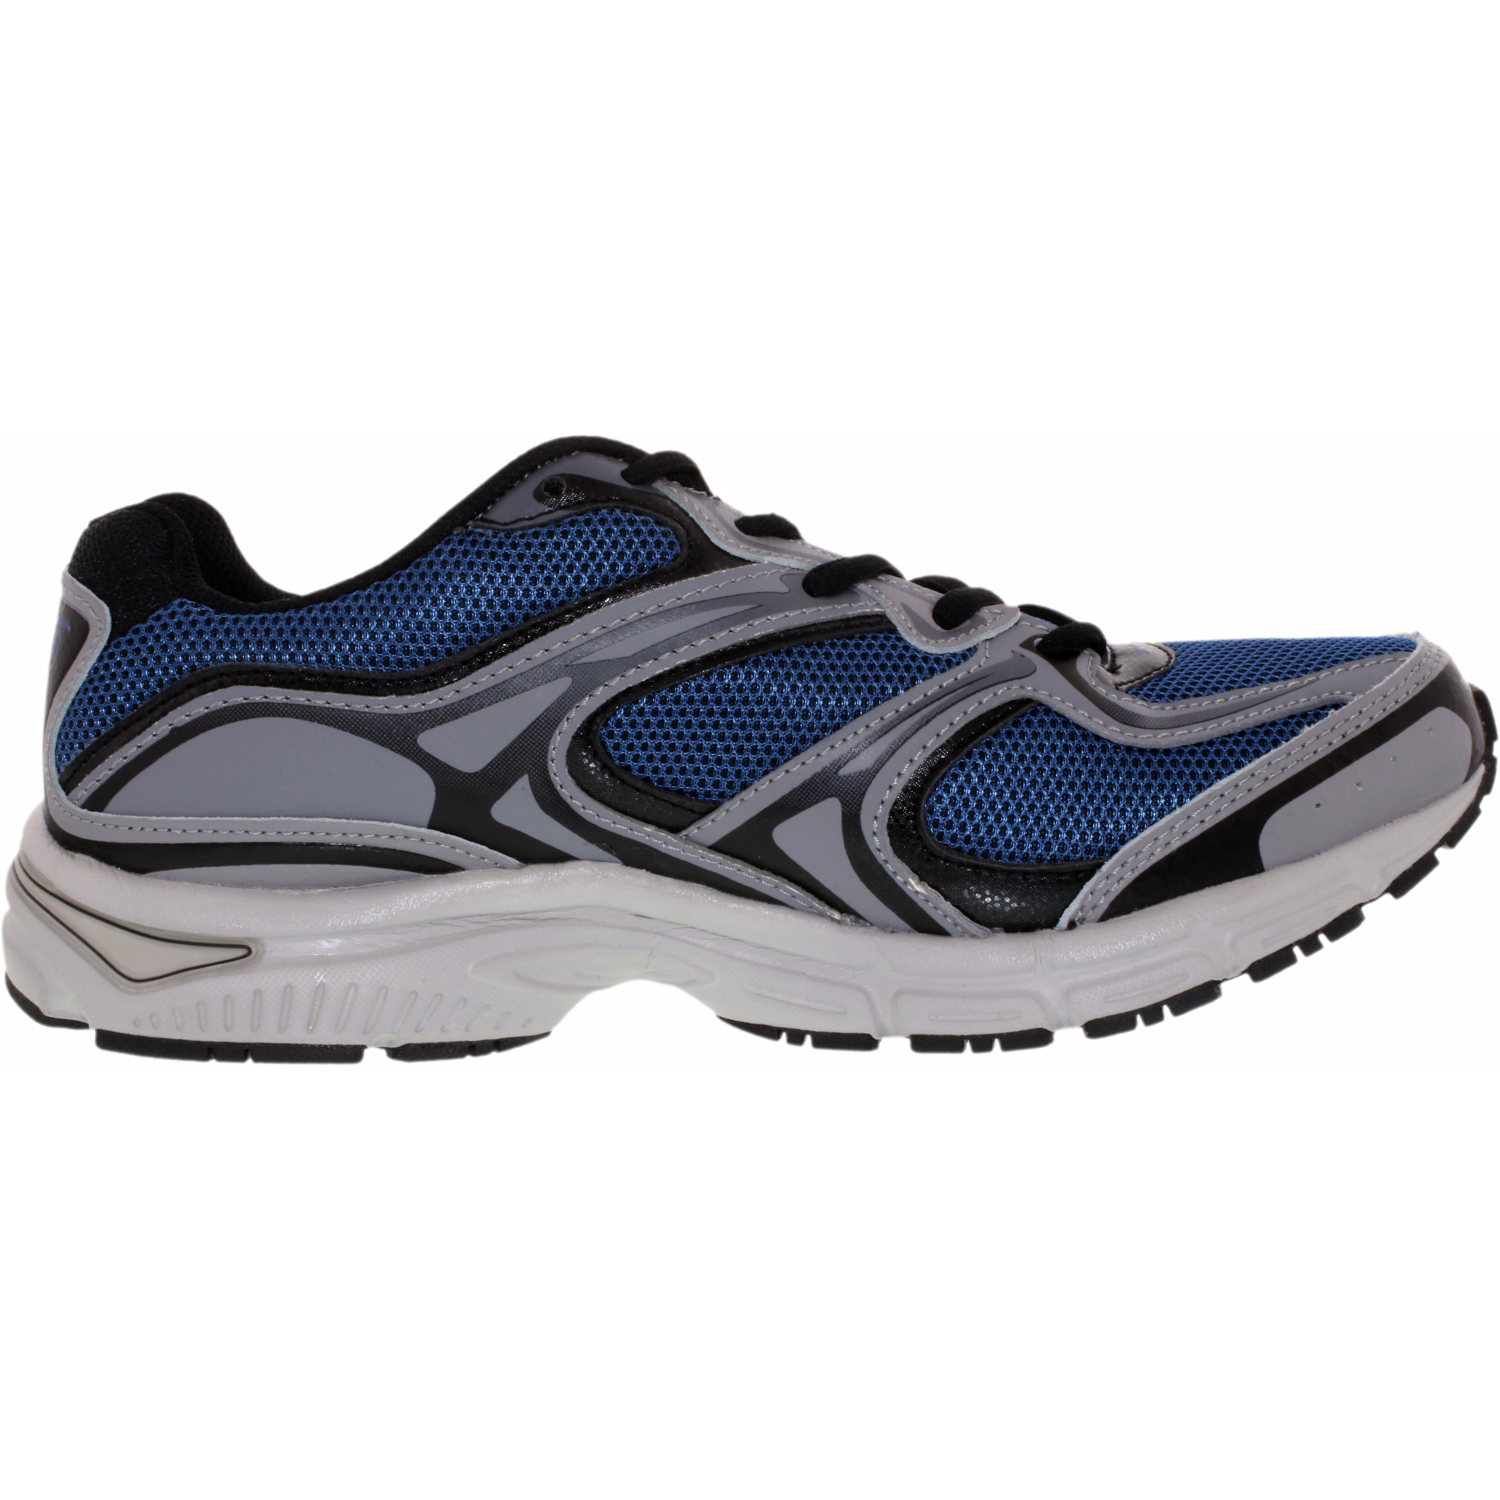 Avia Men's Endeavor Ankle-High Cross Trainer Shoe | eBay